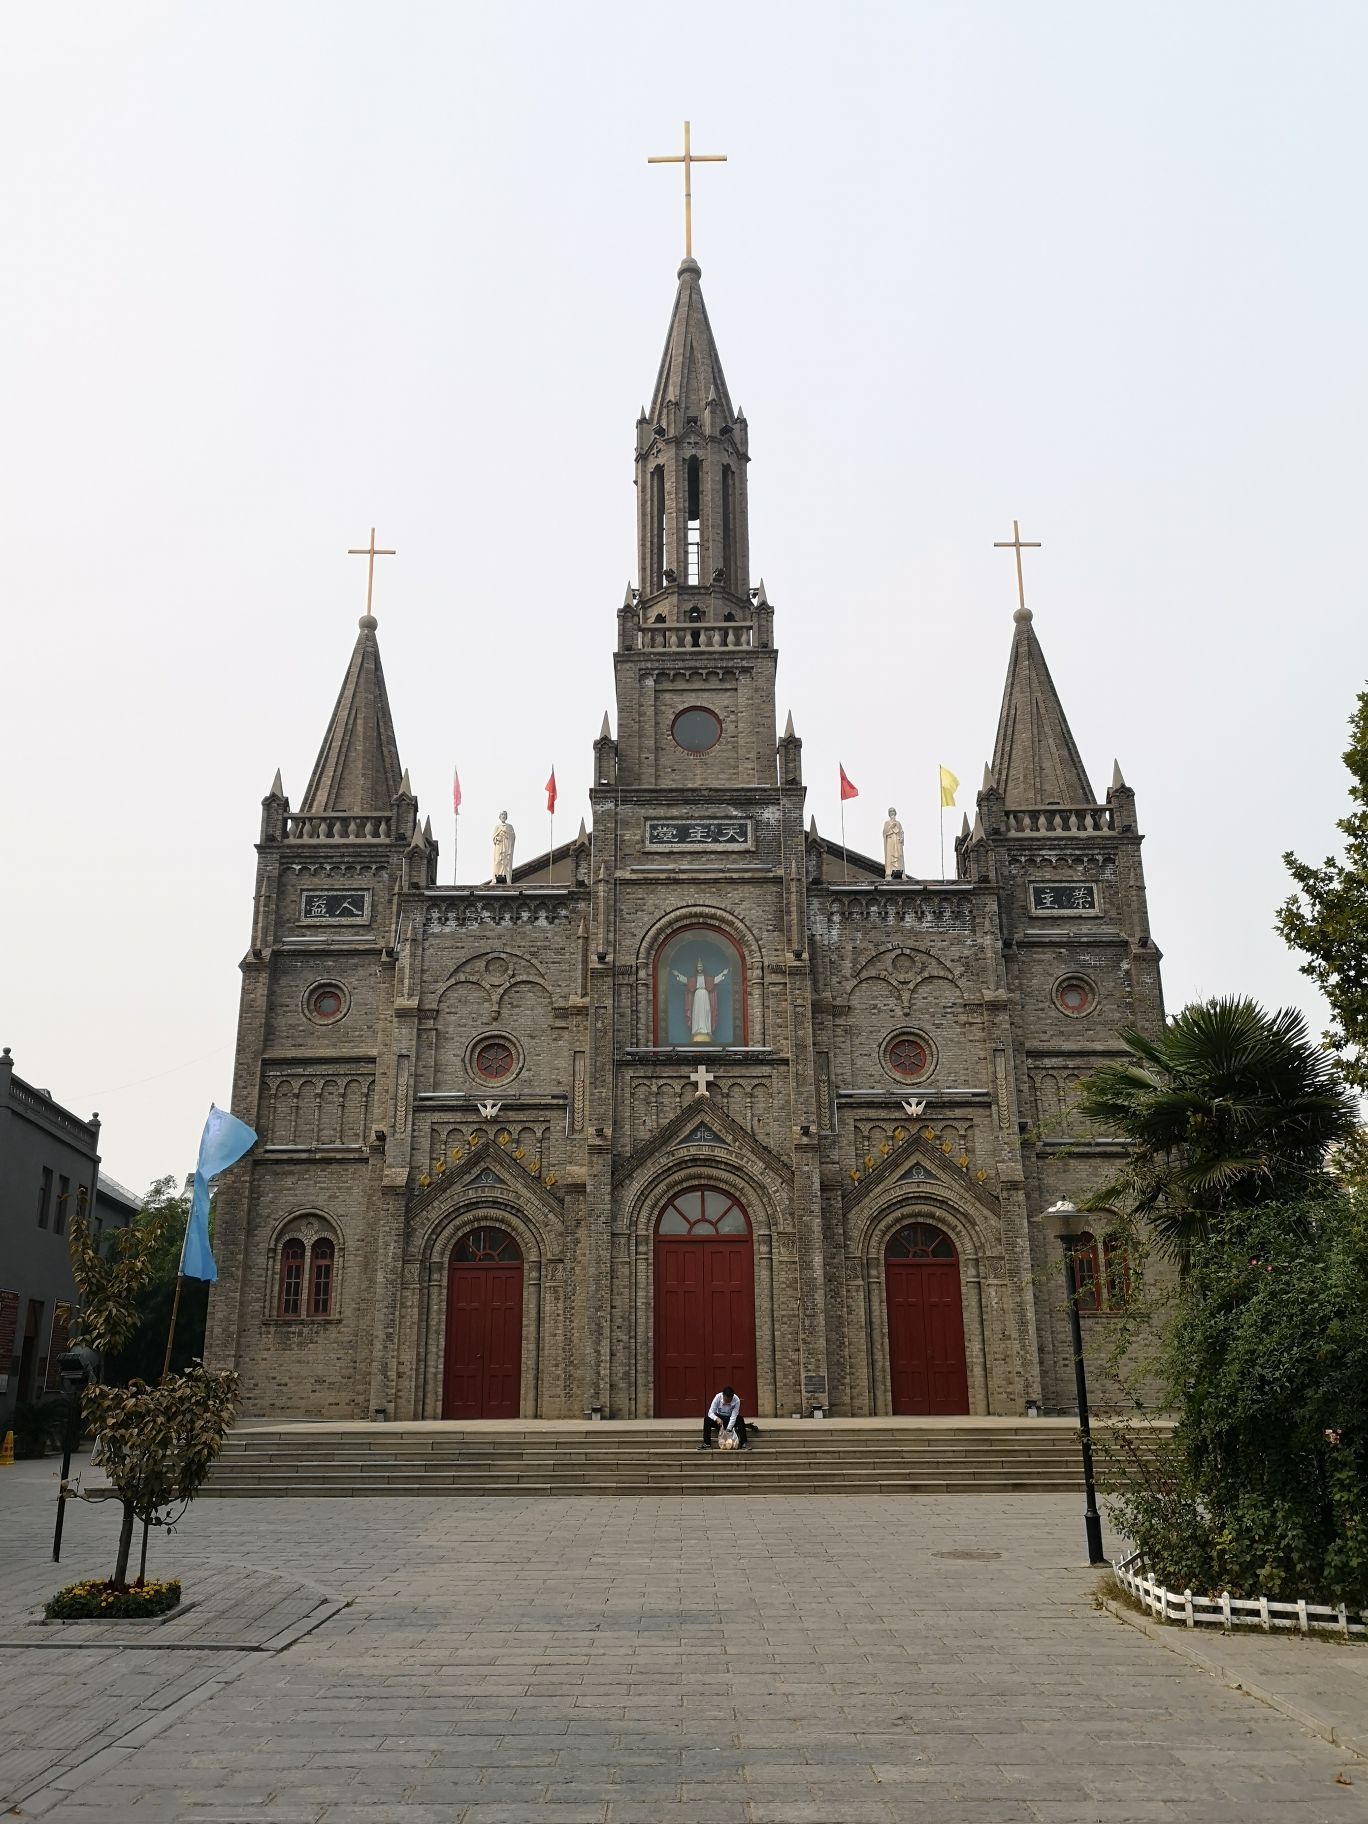 西式风情

小tips:青州古城里有两座老教堂,基督教和天主教